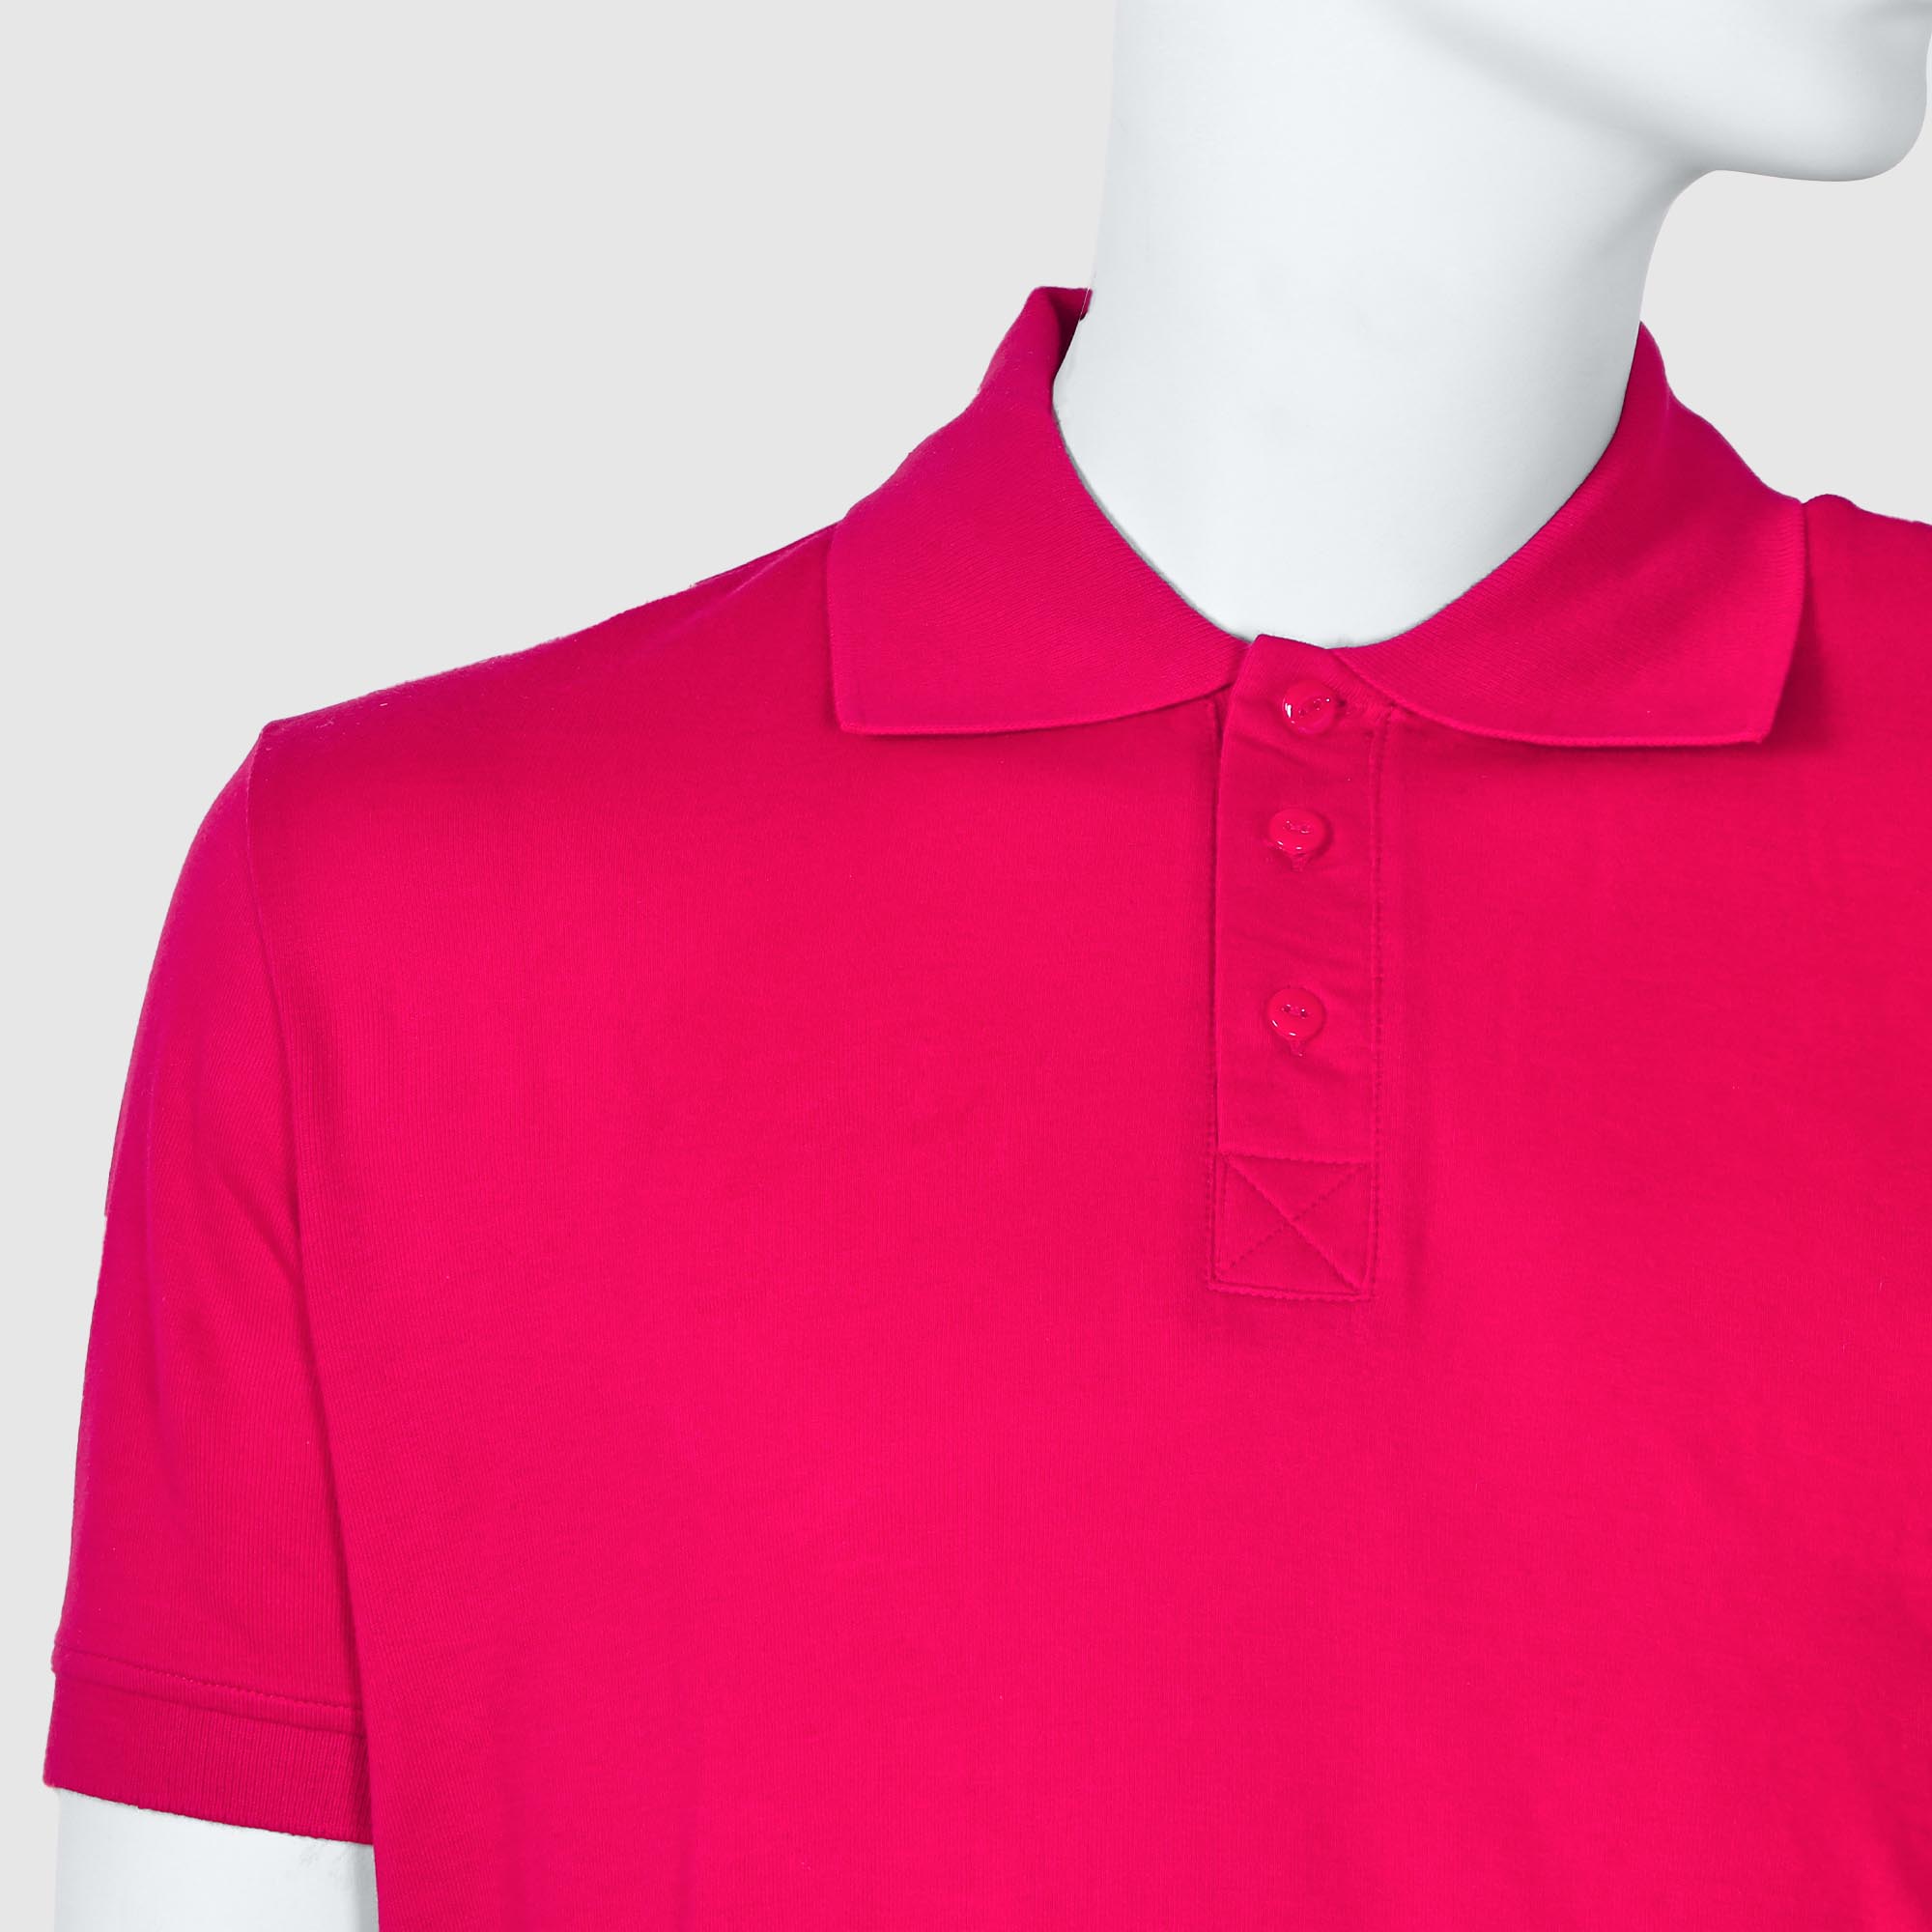 Мужская футболка-поло Diva Teks красная (DTD-08), цвет красный, размер 48-50 - фото 3